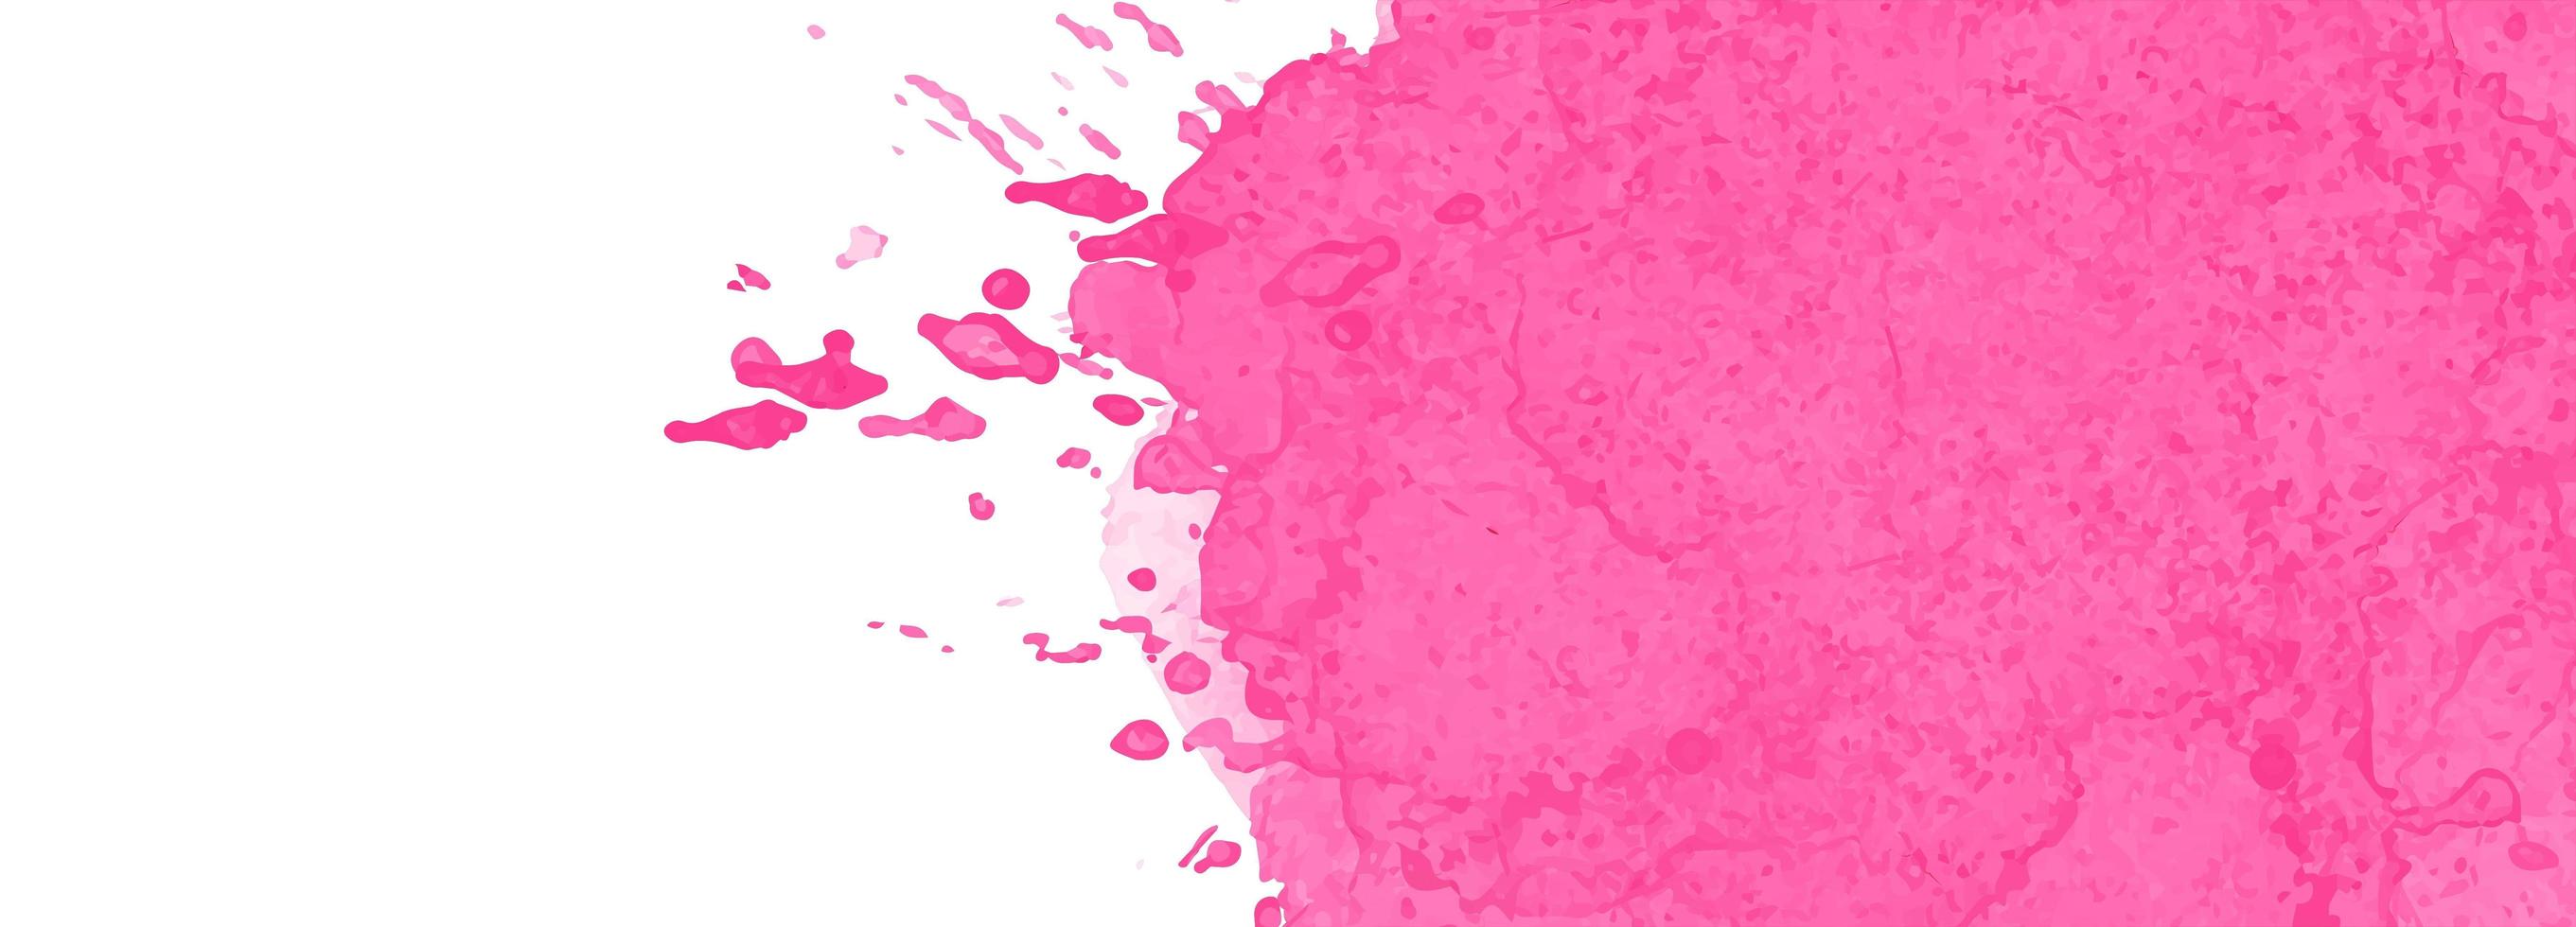 abstrakter rosa Aquarell-Spritzer-Fahnenentwurf vektor